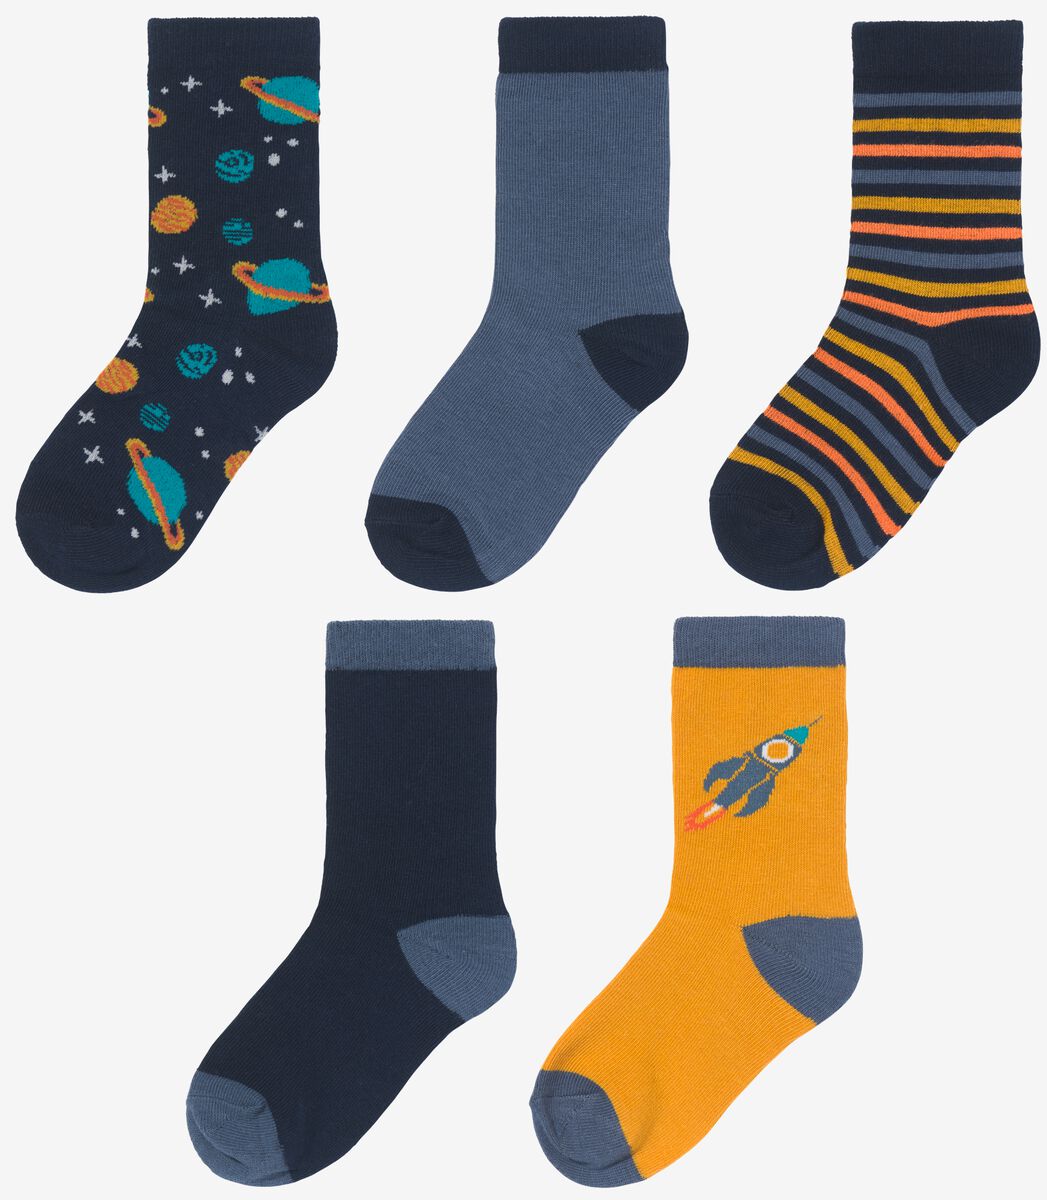 Kinder-Socken mit Baumwolle, 5 Paar blau 23/26 - 4360051 - HEMA